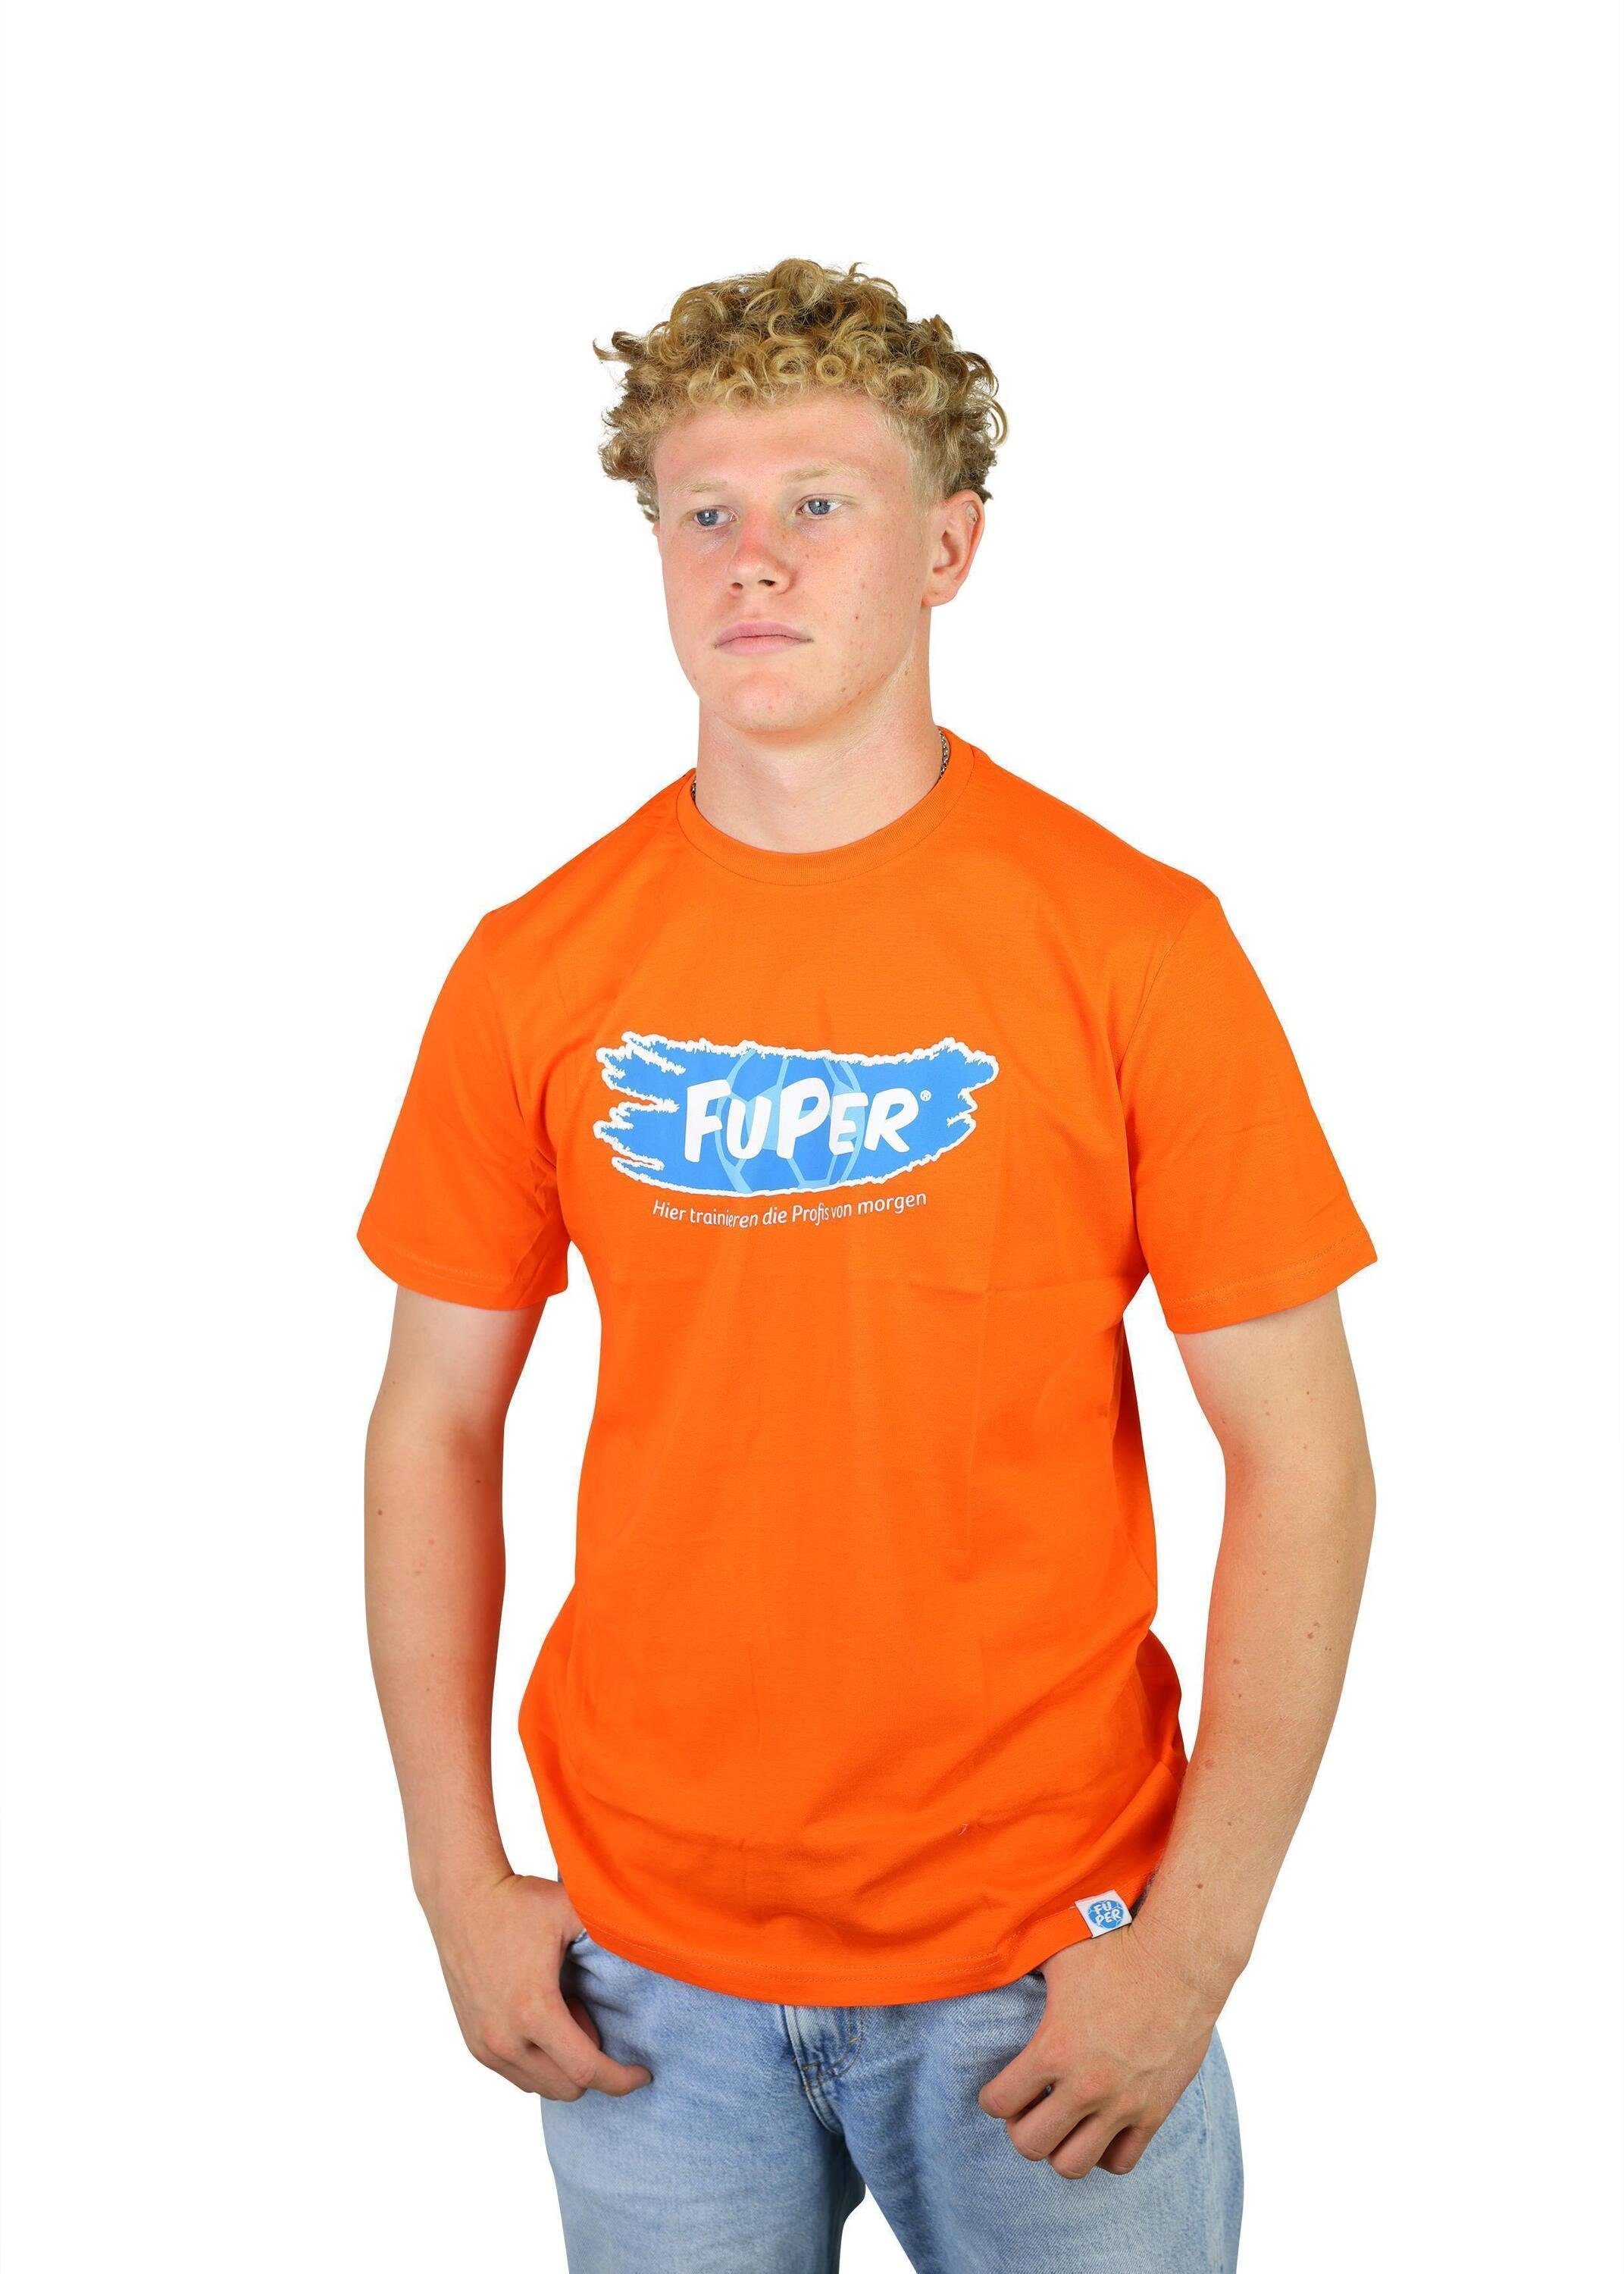 FuPer T-Shirt Tarik für Baumwolle, Fußball, Orange Kinder, aus Jugend